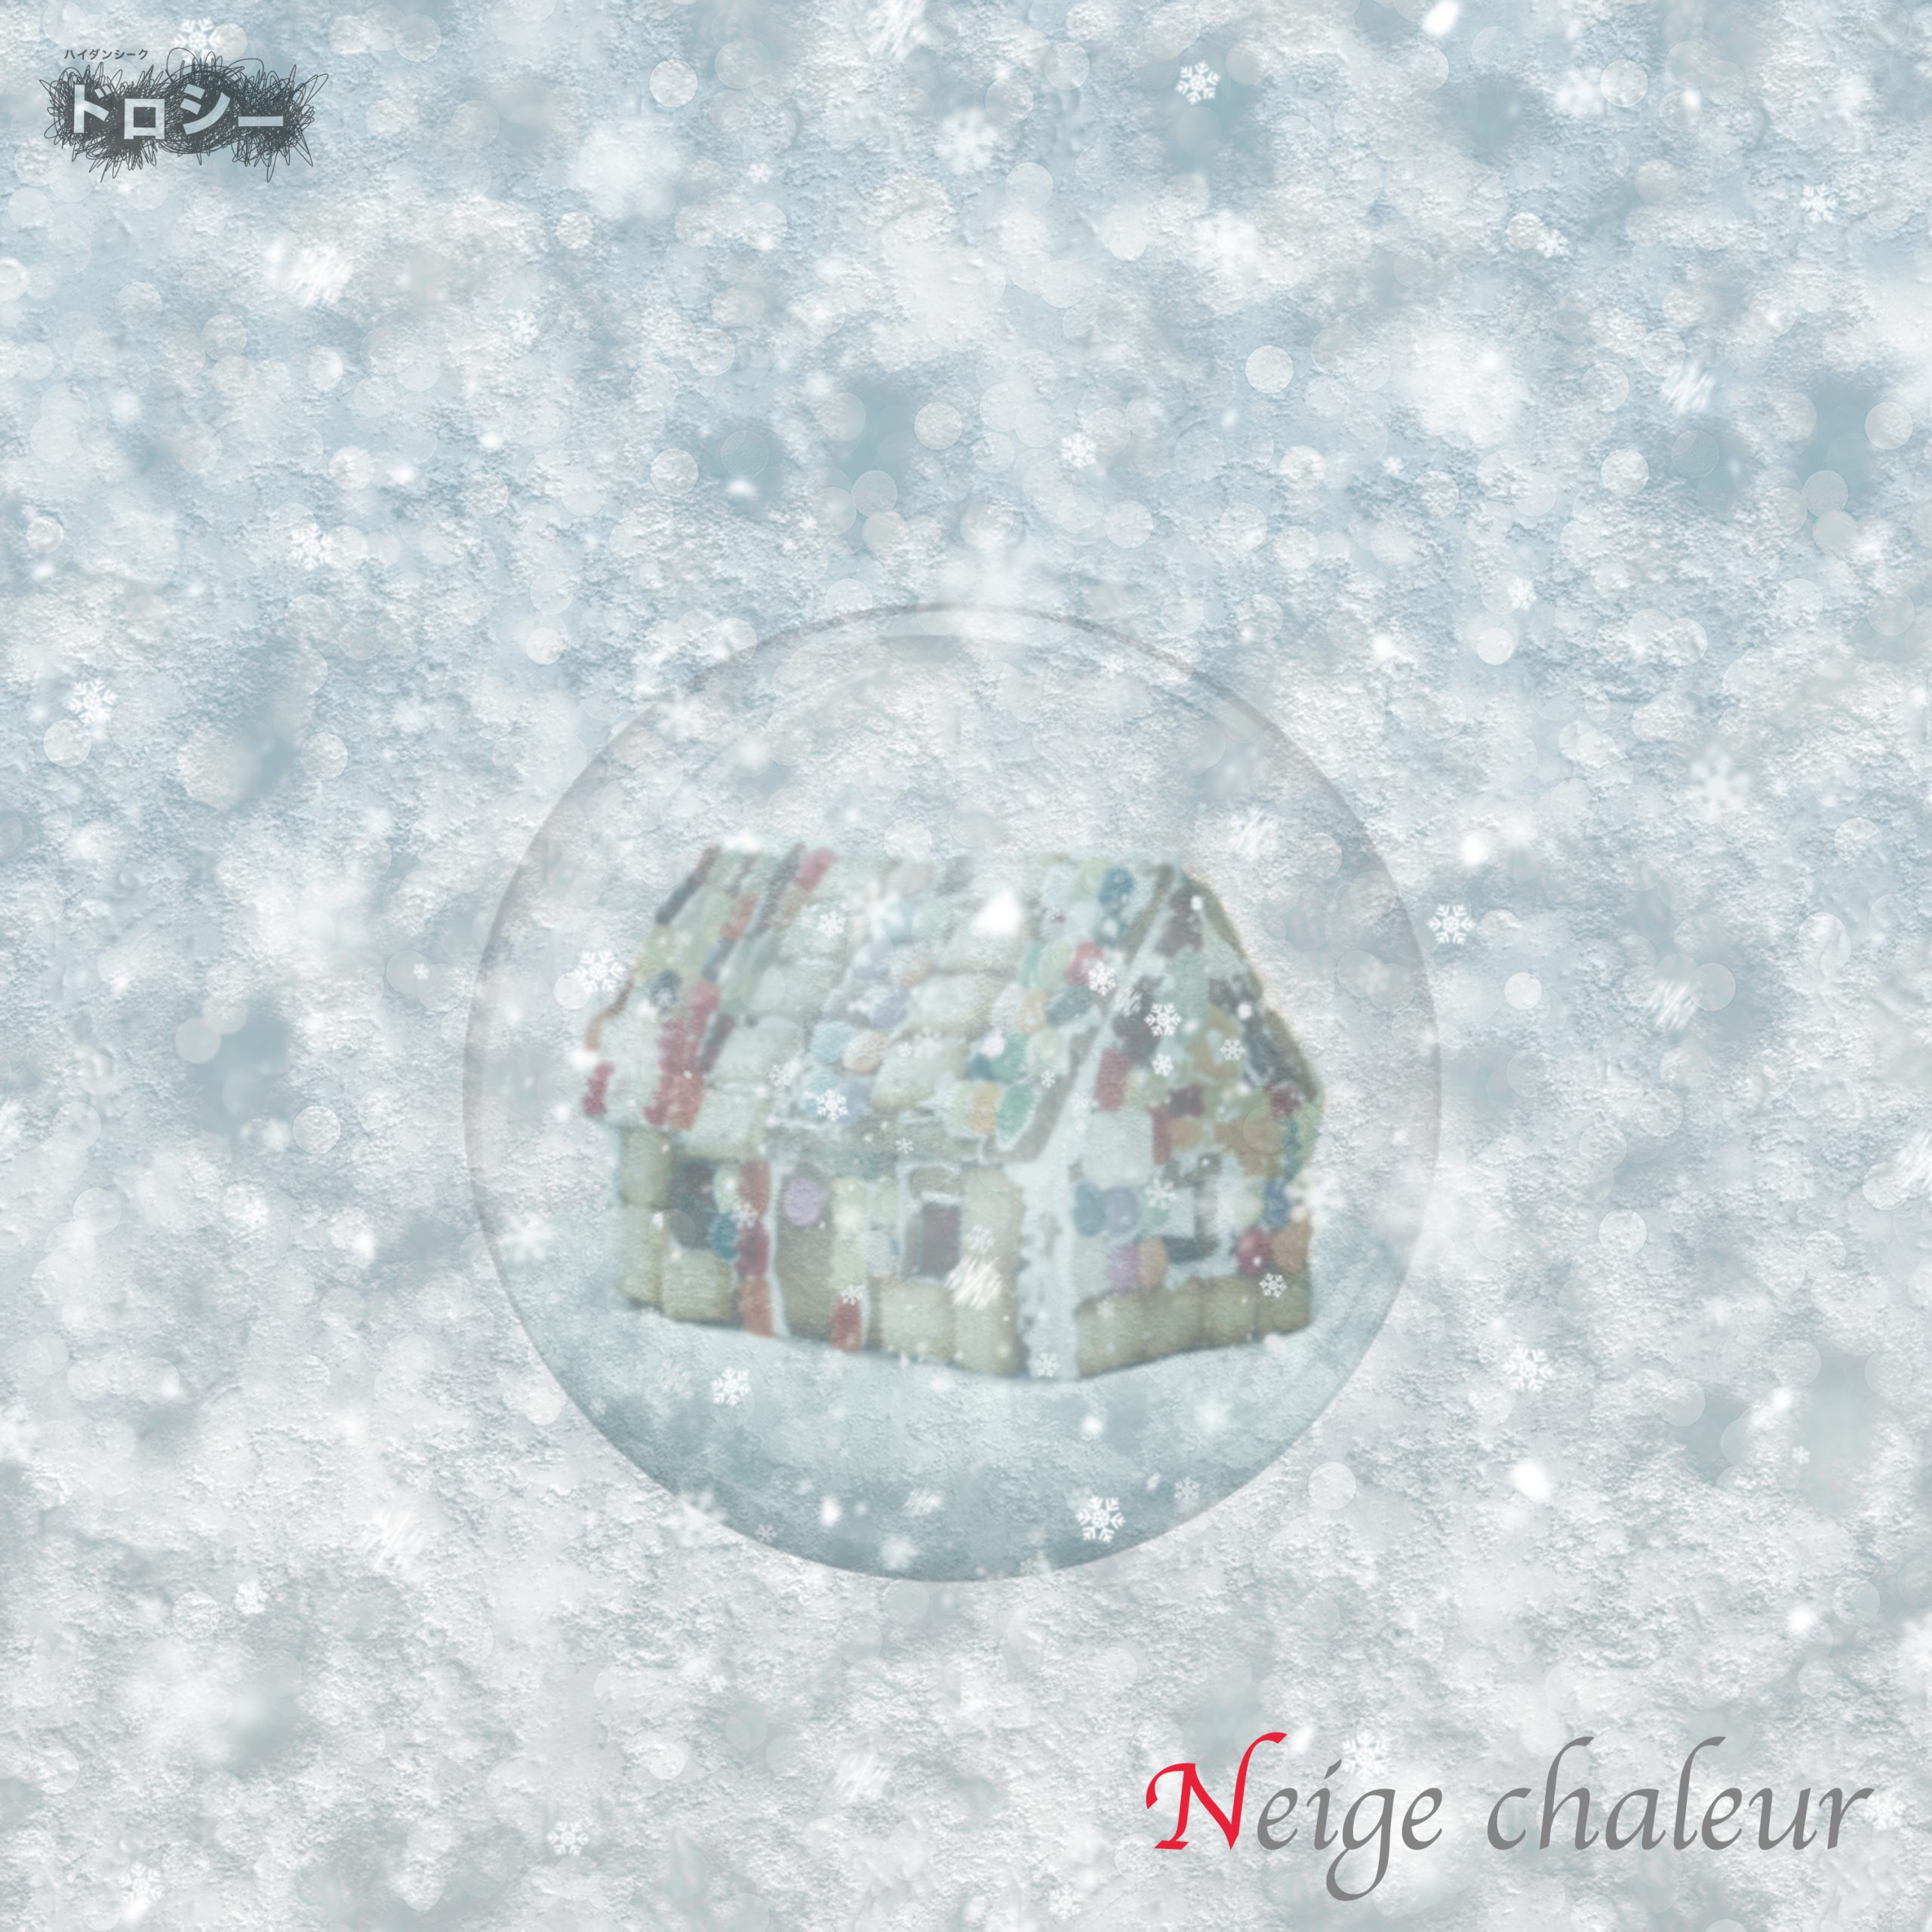 5th digital single「Neige chaleur」